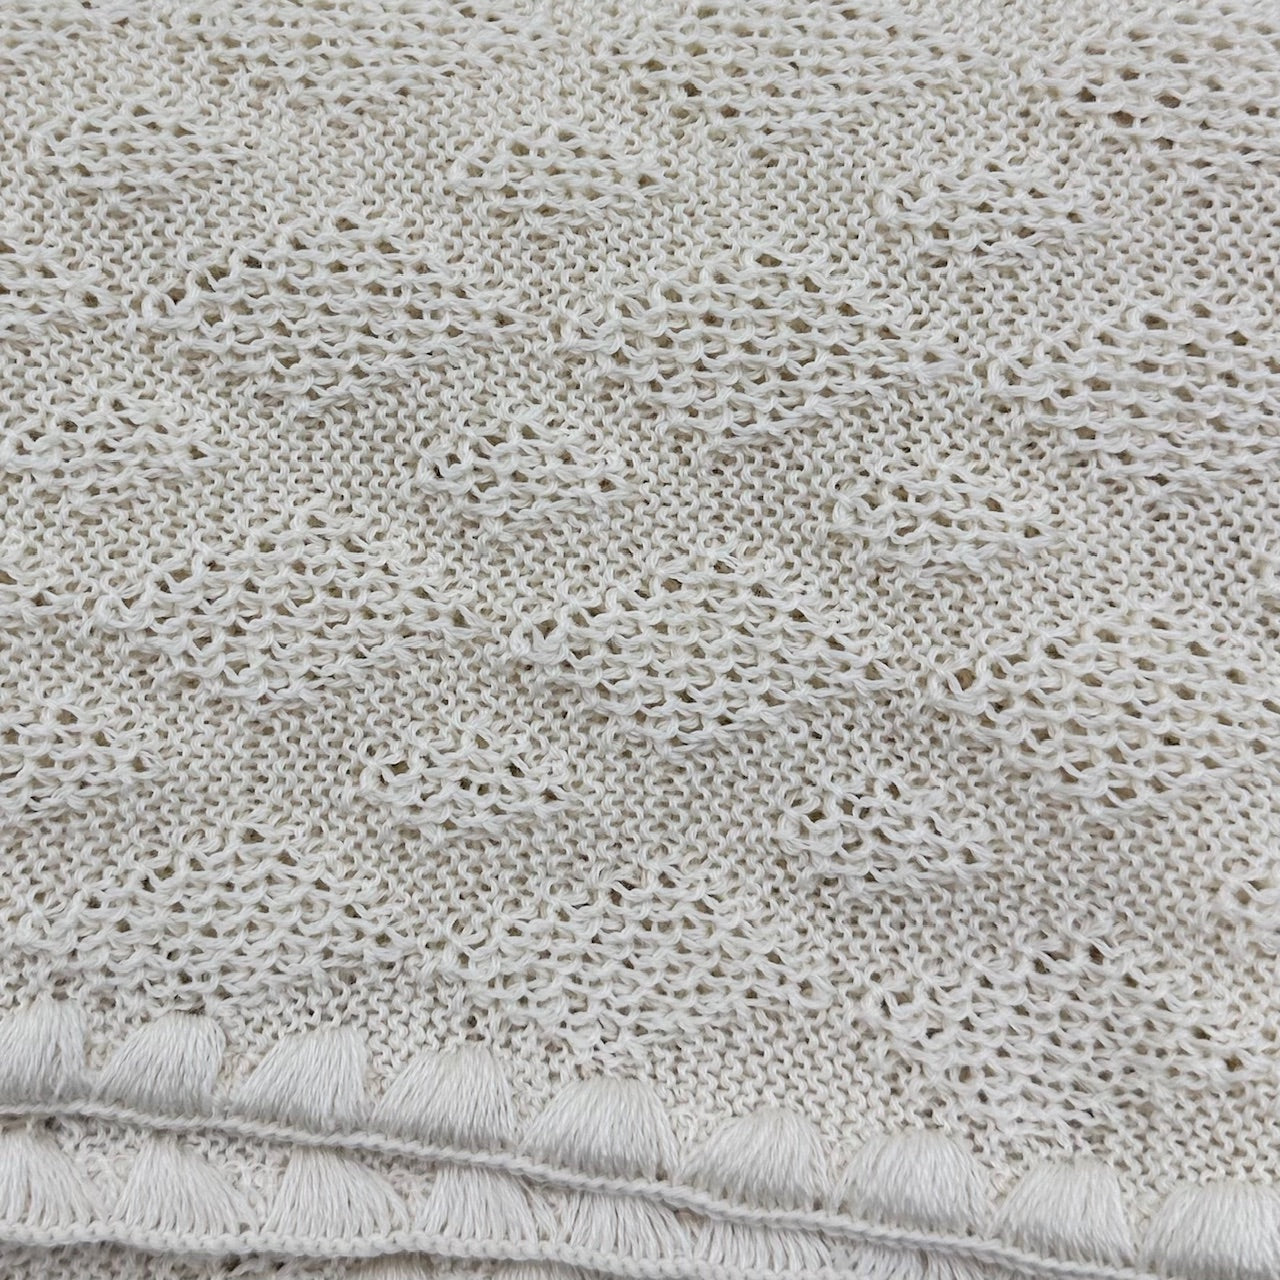 DISANA Classic Organic Merino Wool Baby Blanket